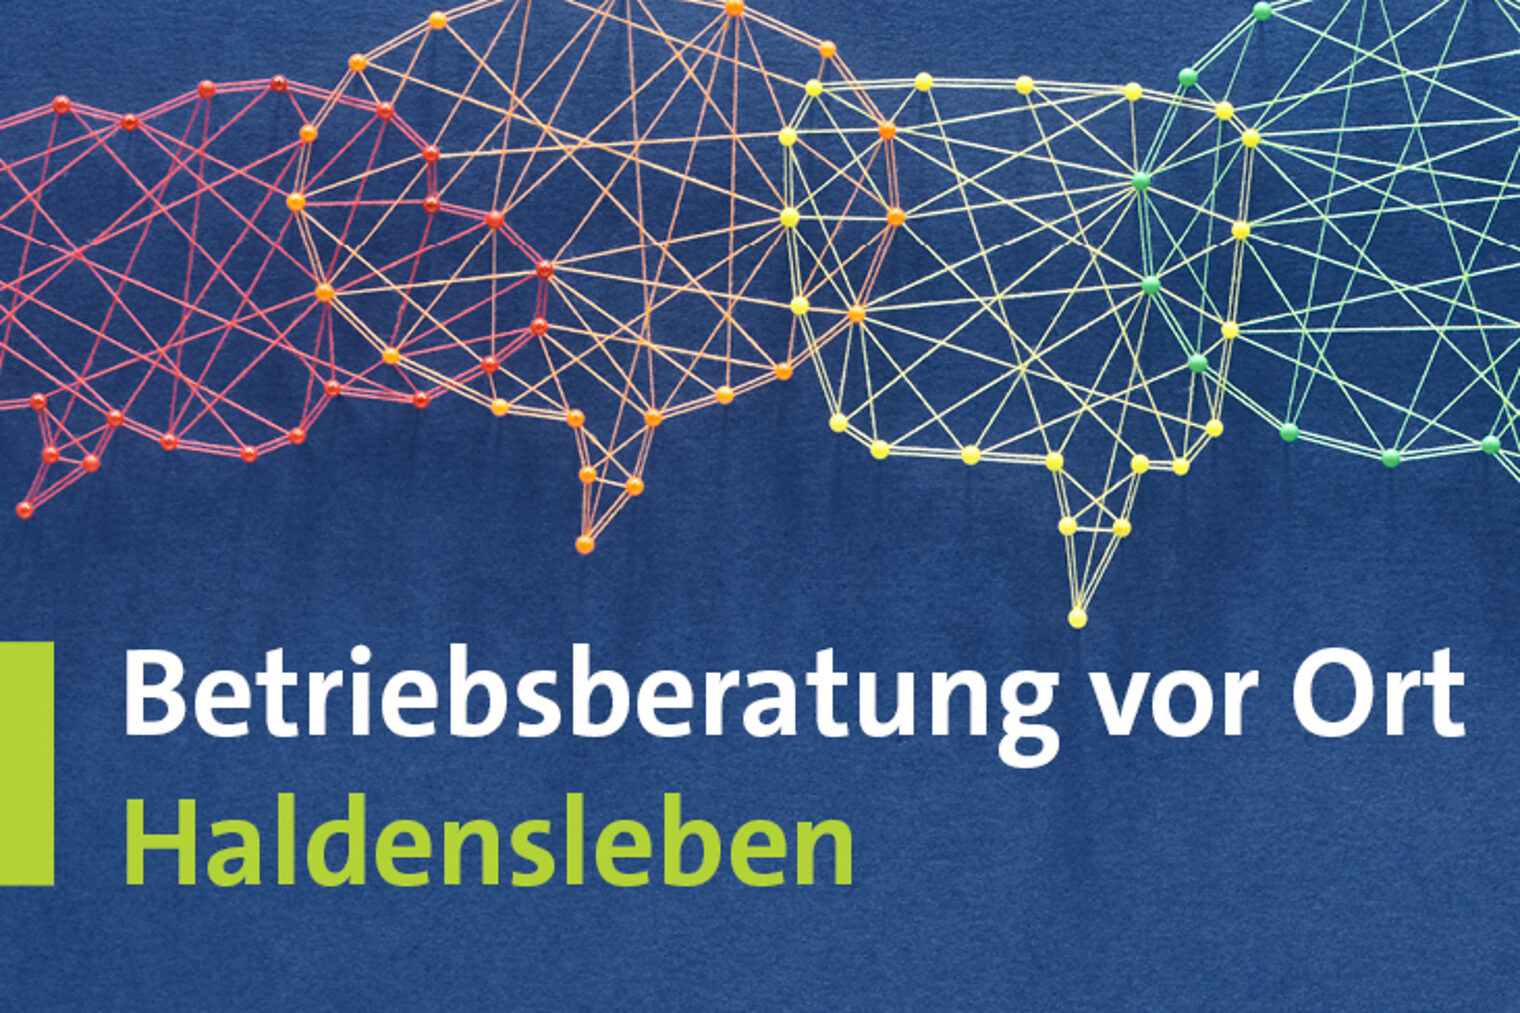 Betriebsberatung-Haldensleben-Webbanner-1440x4885